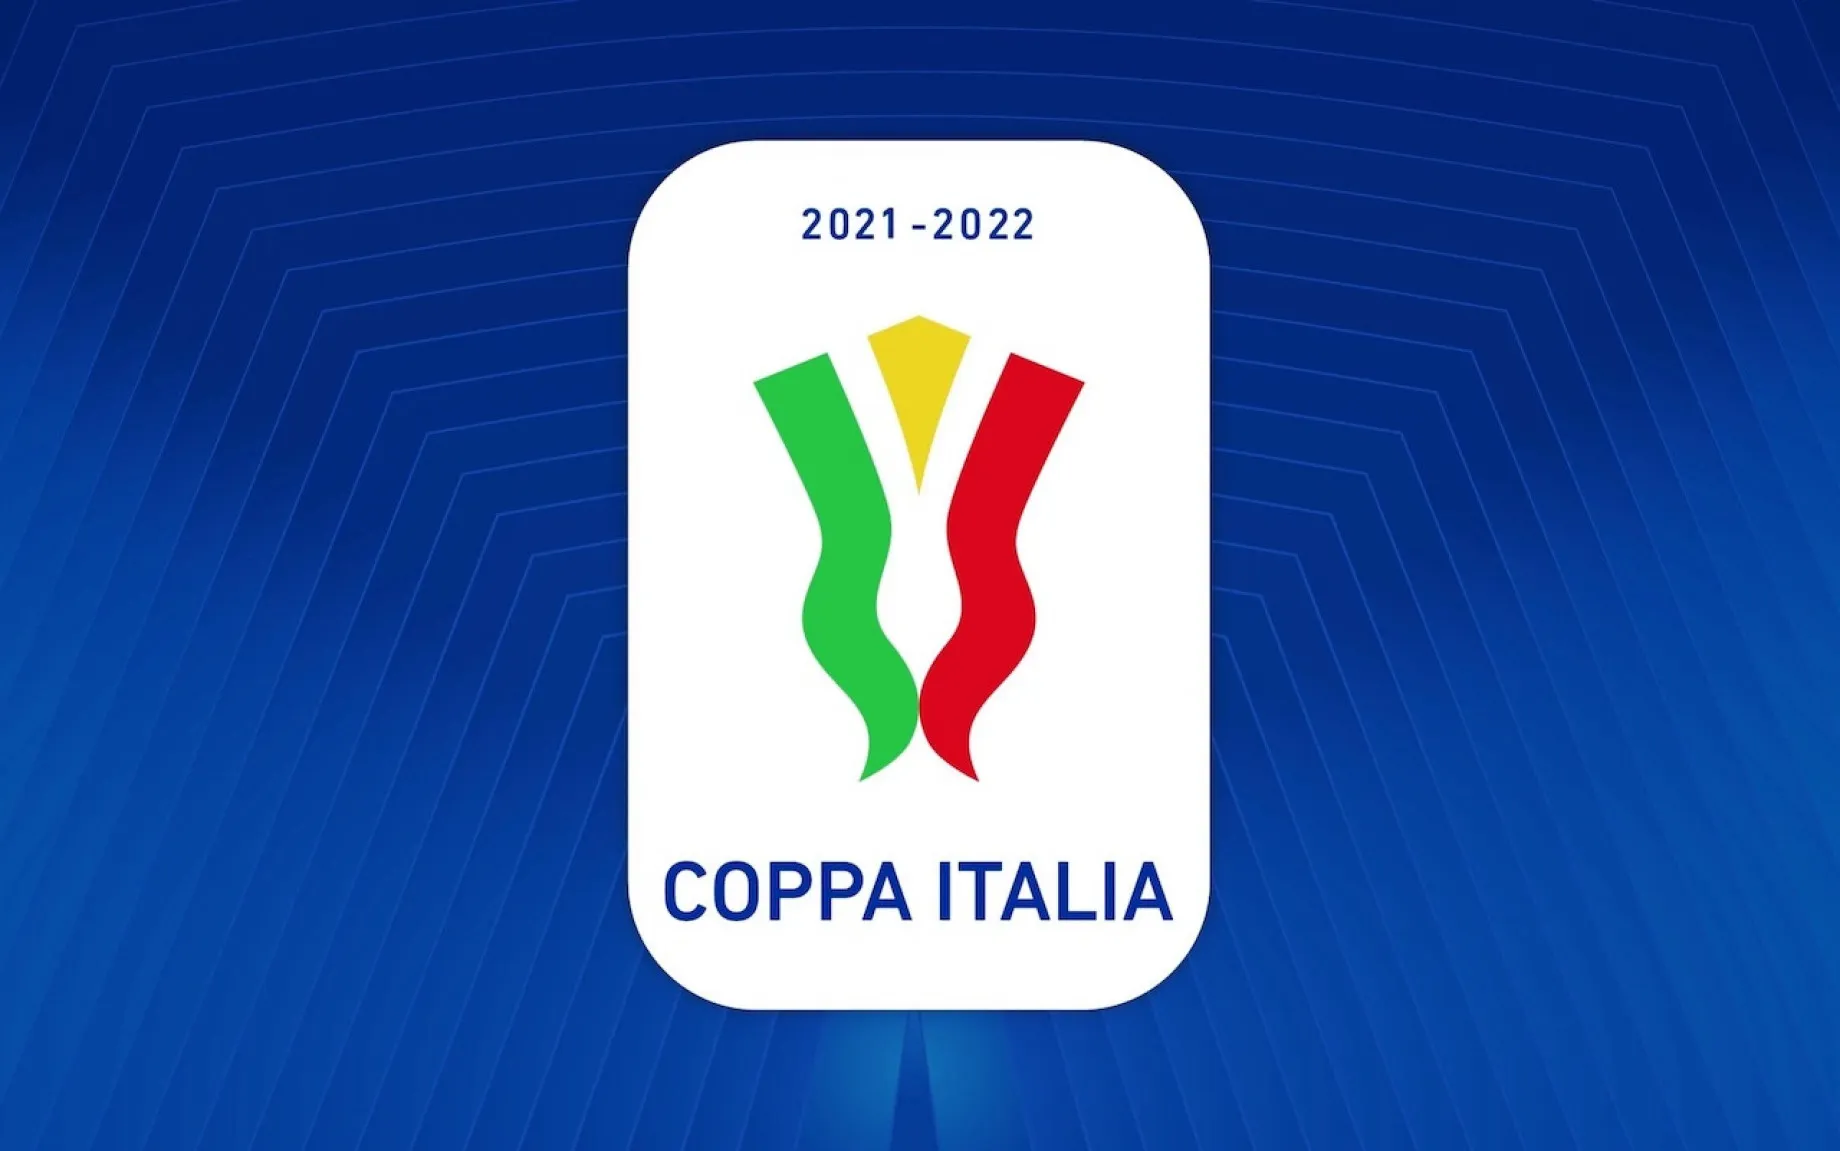 Puchar Włoch, finał, 11.05.22. godz. 21:00Juventus Turyn - Inter MediolanTyp: 2 - zwycięstwo Interu